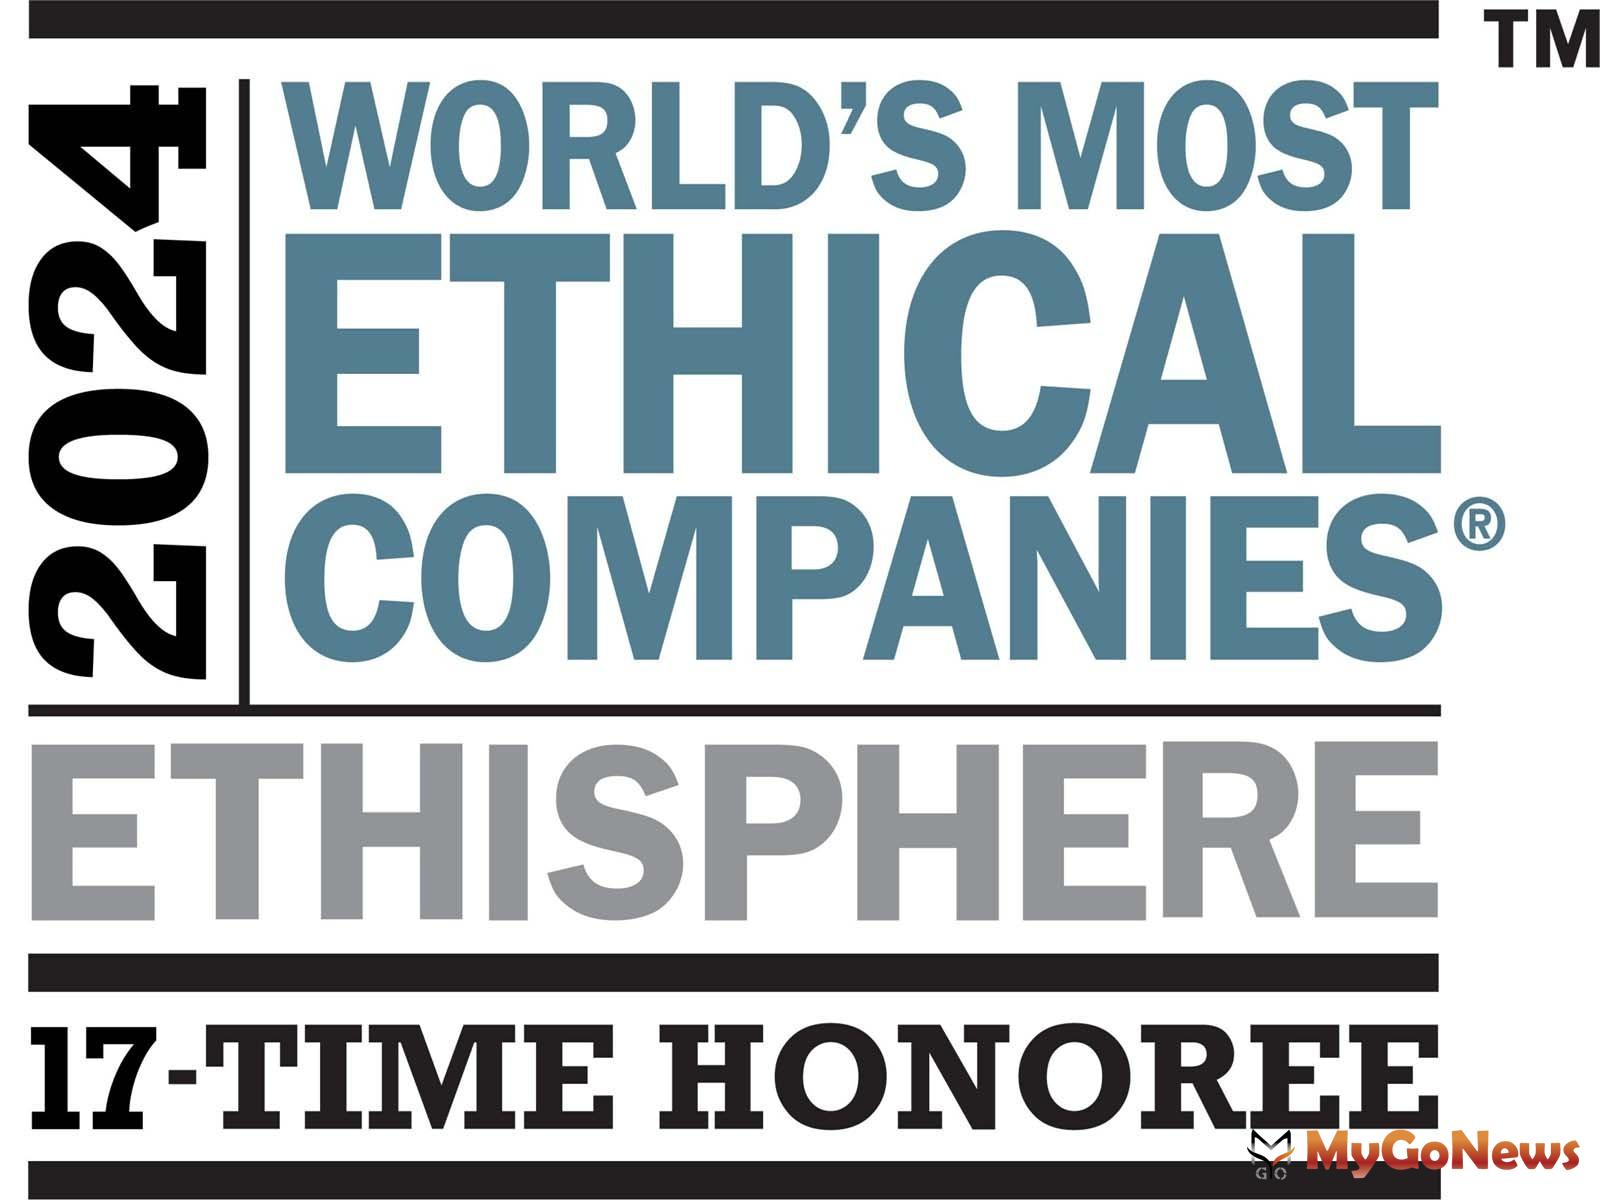 仲量聯行連續第17年獲選全球最有商業道德公司